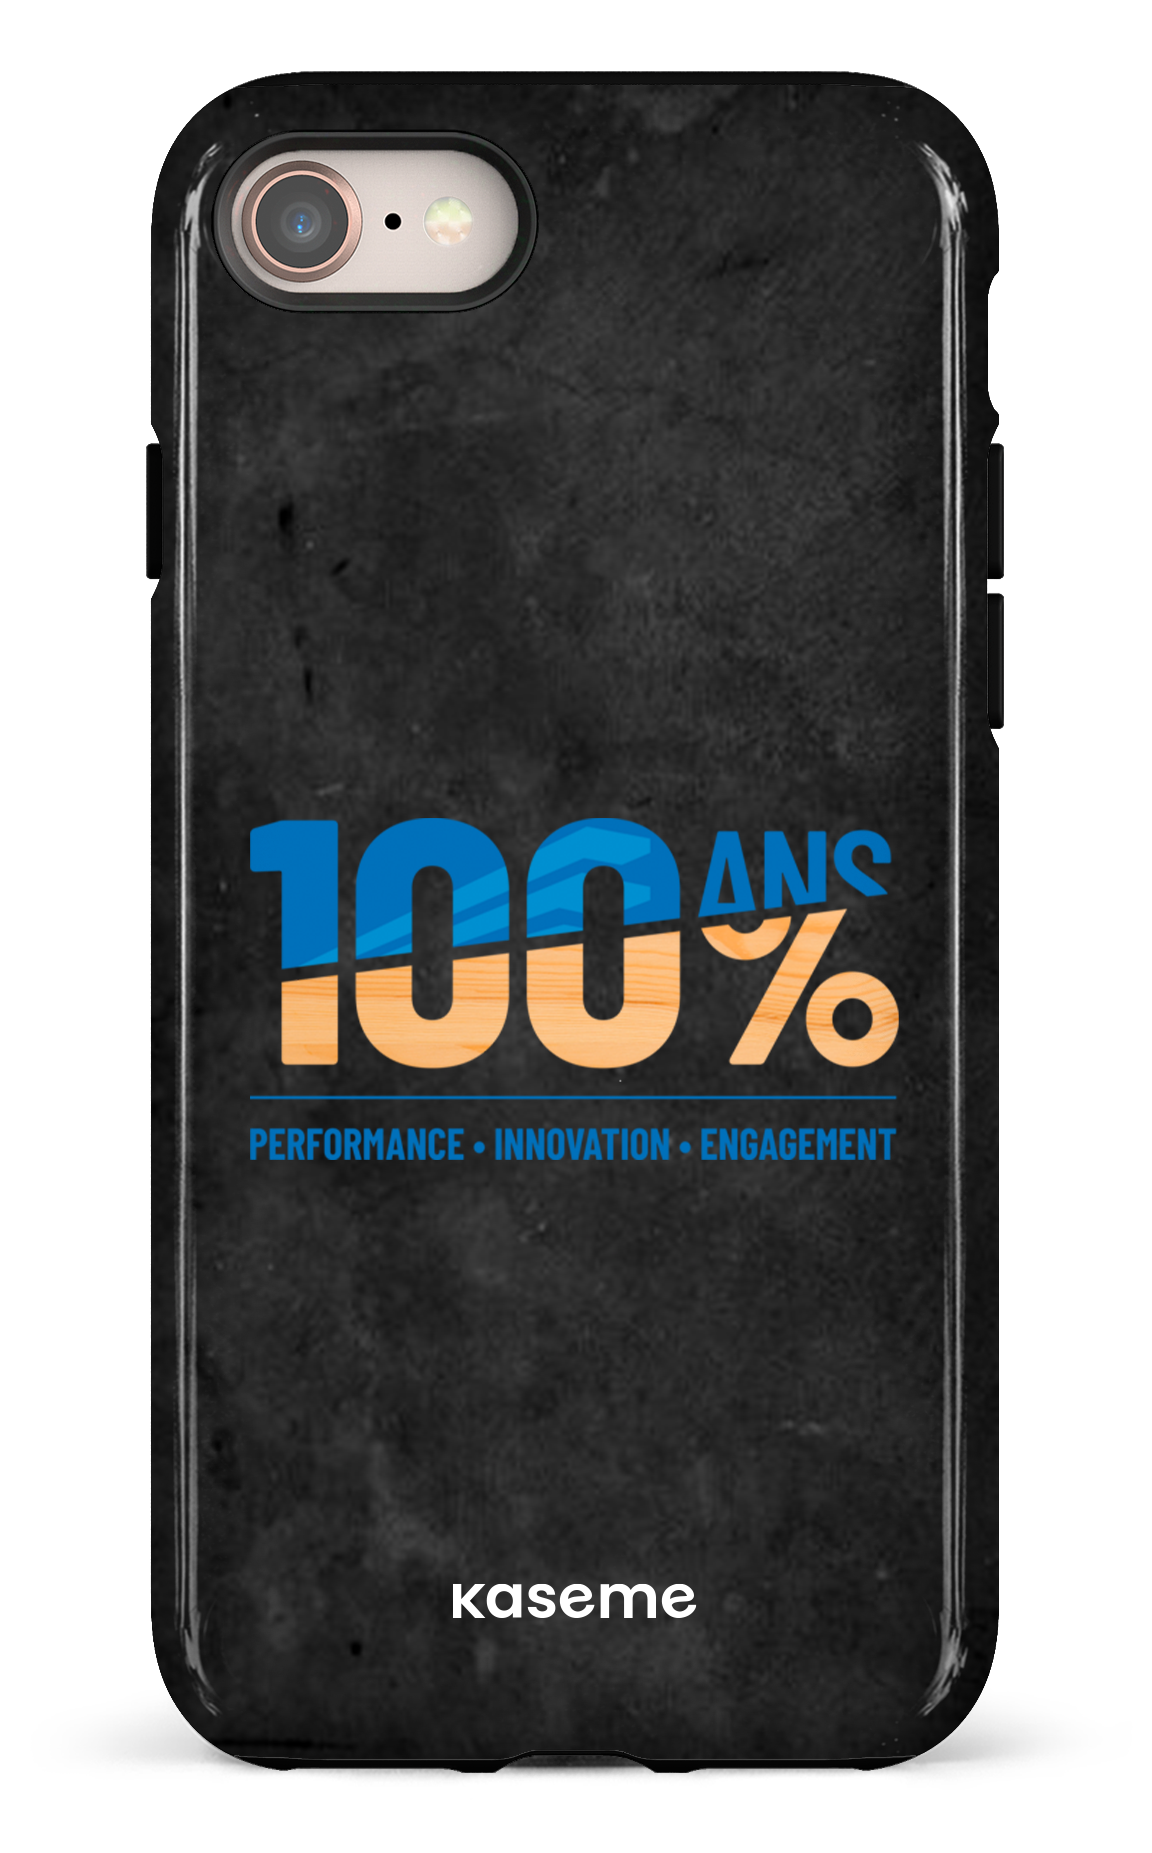 100ans BID Group - iPhone 7